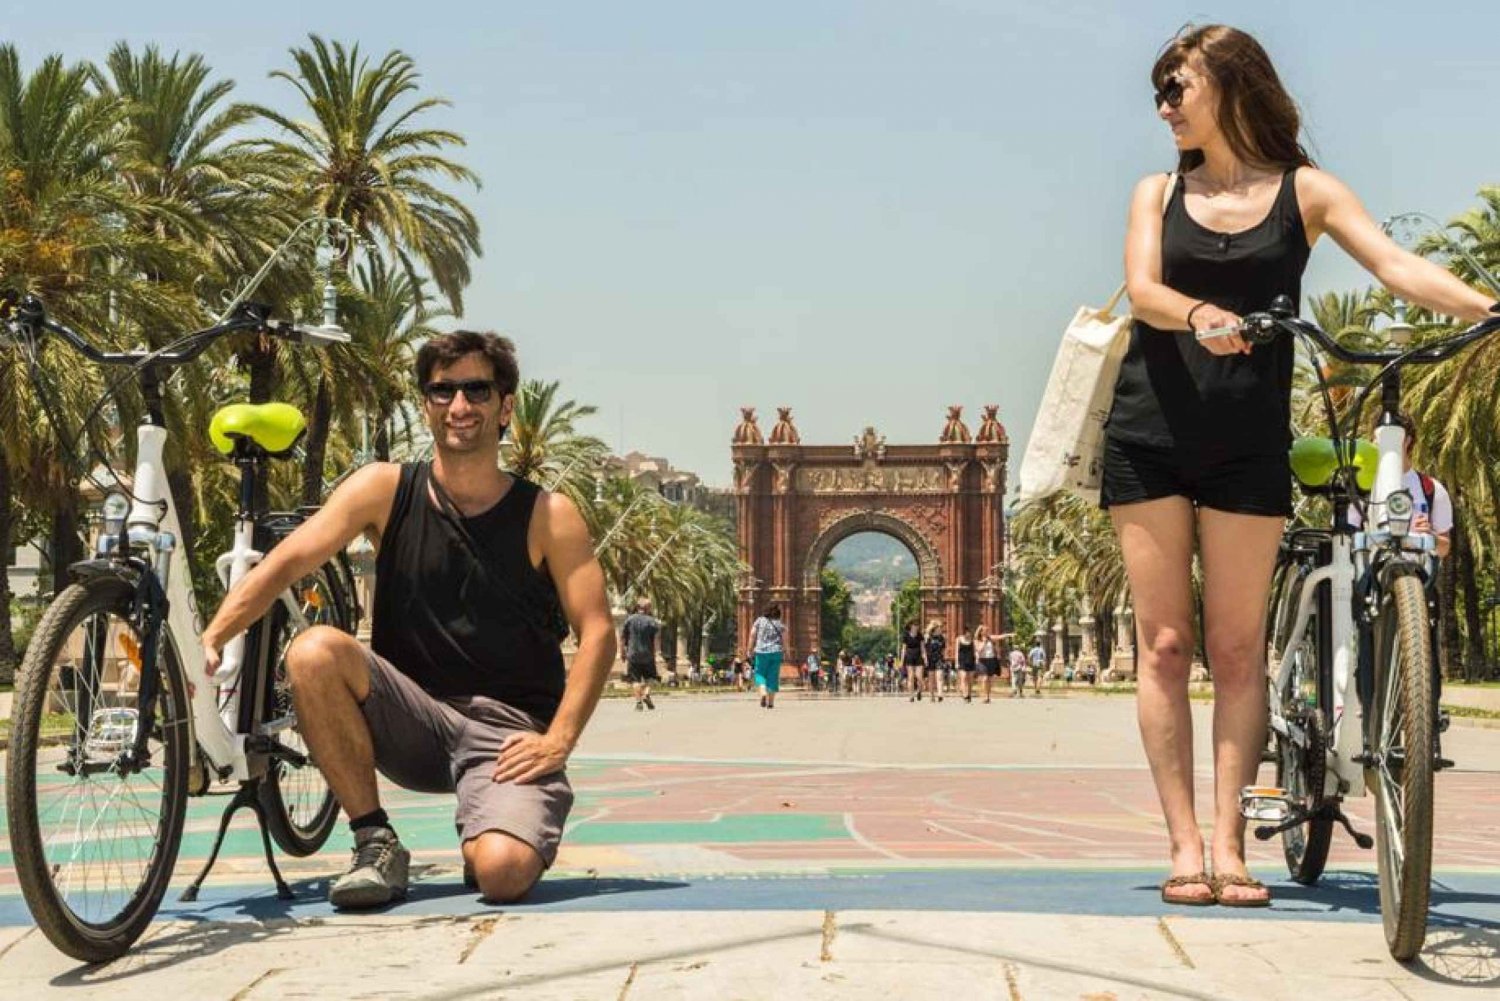 Barcellona: Tour fotografico in bici elettrica di 4 ore